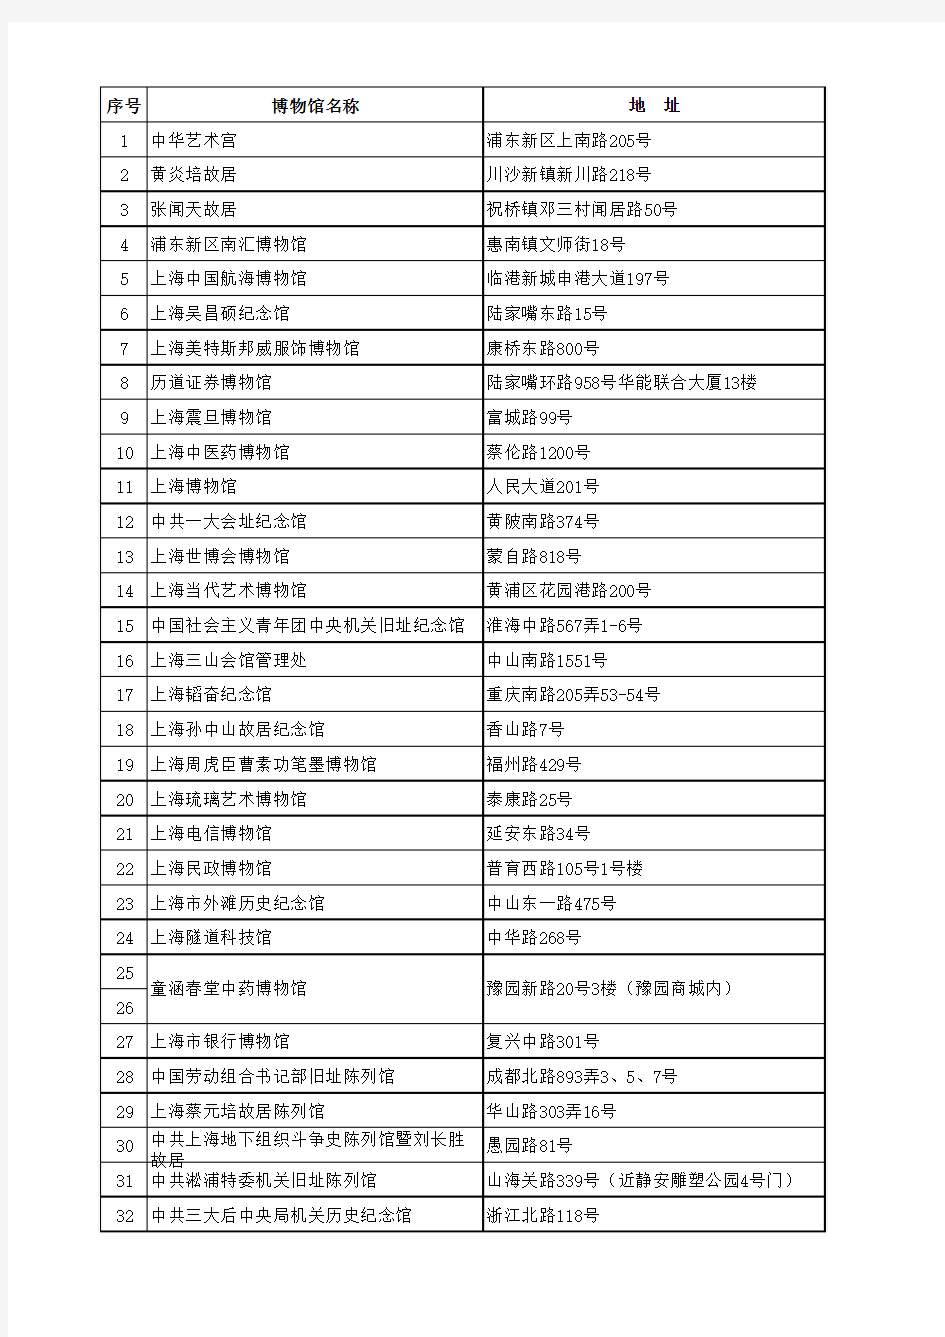 上海的博物馆列表